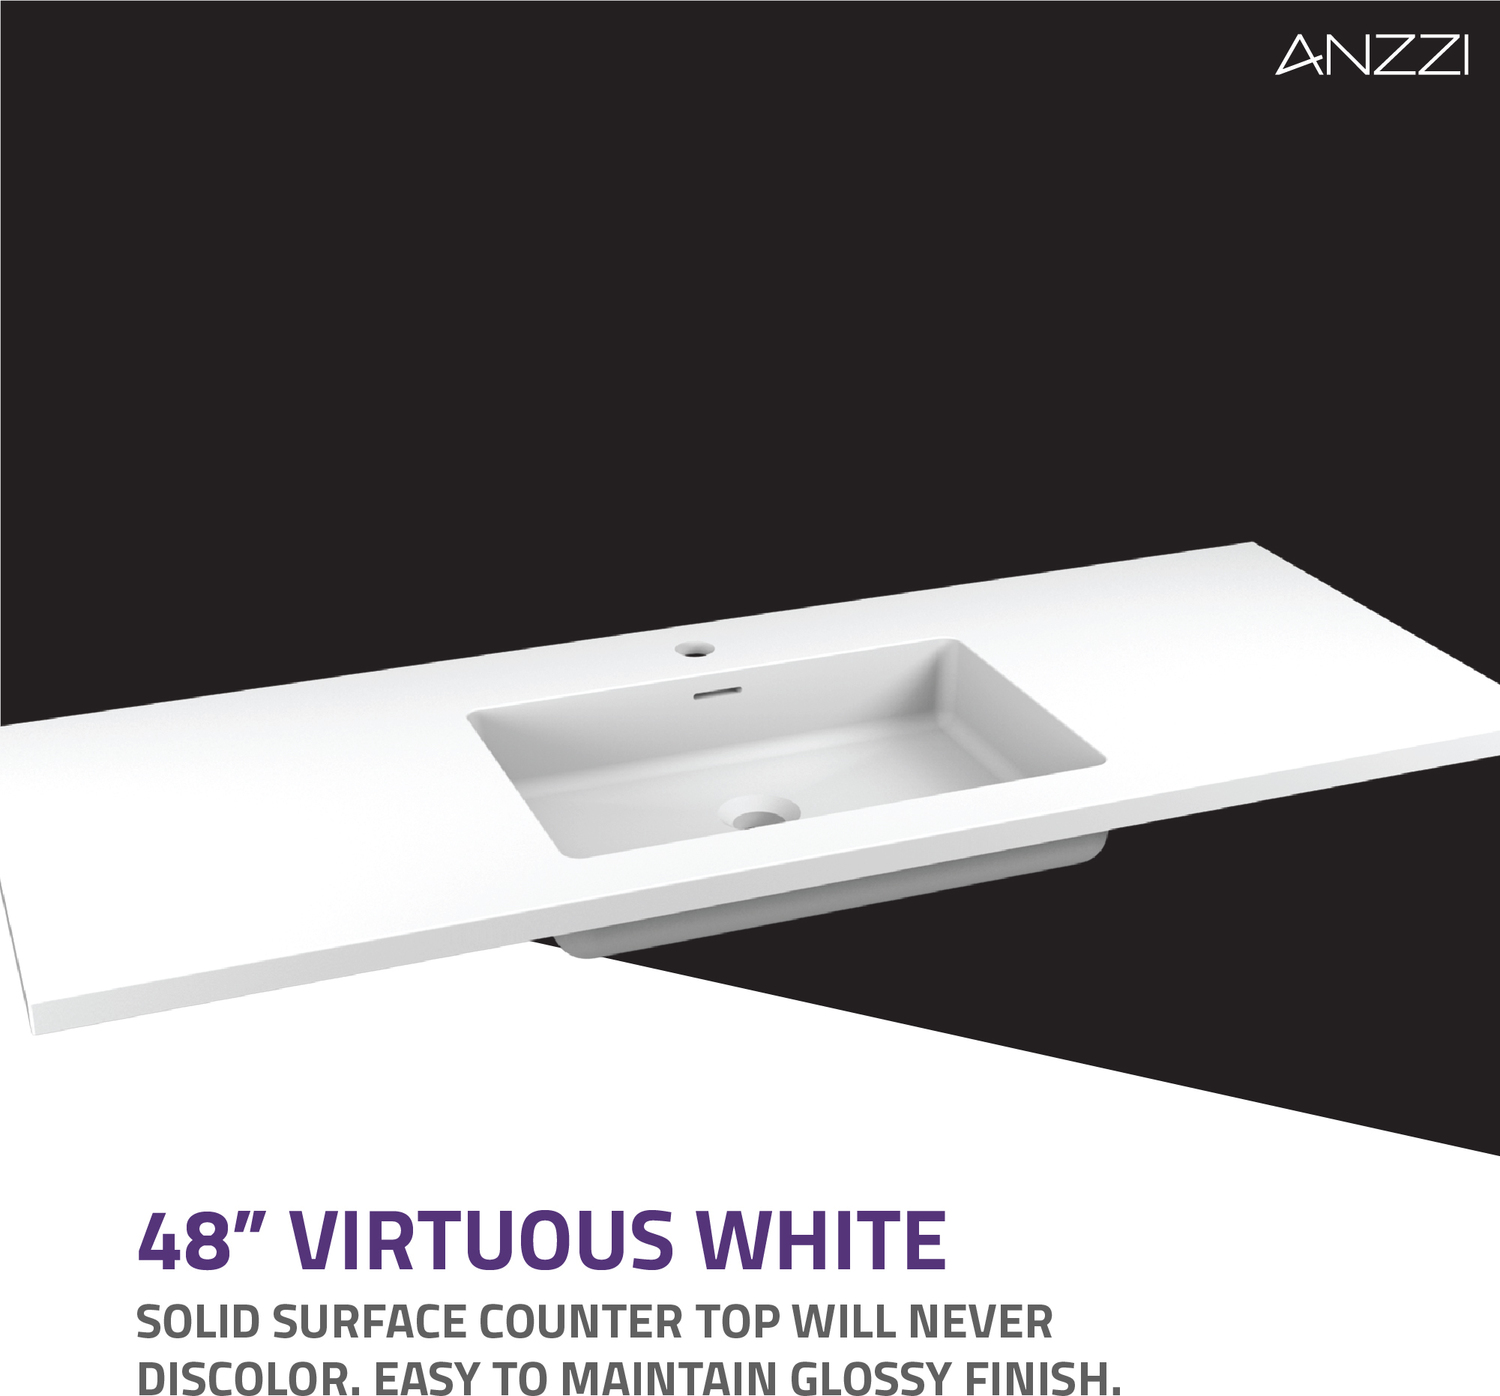 30 inch vanity base Anzzi BATHROOM - Vanities - Vanity Sets Brown